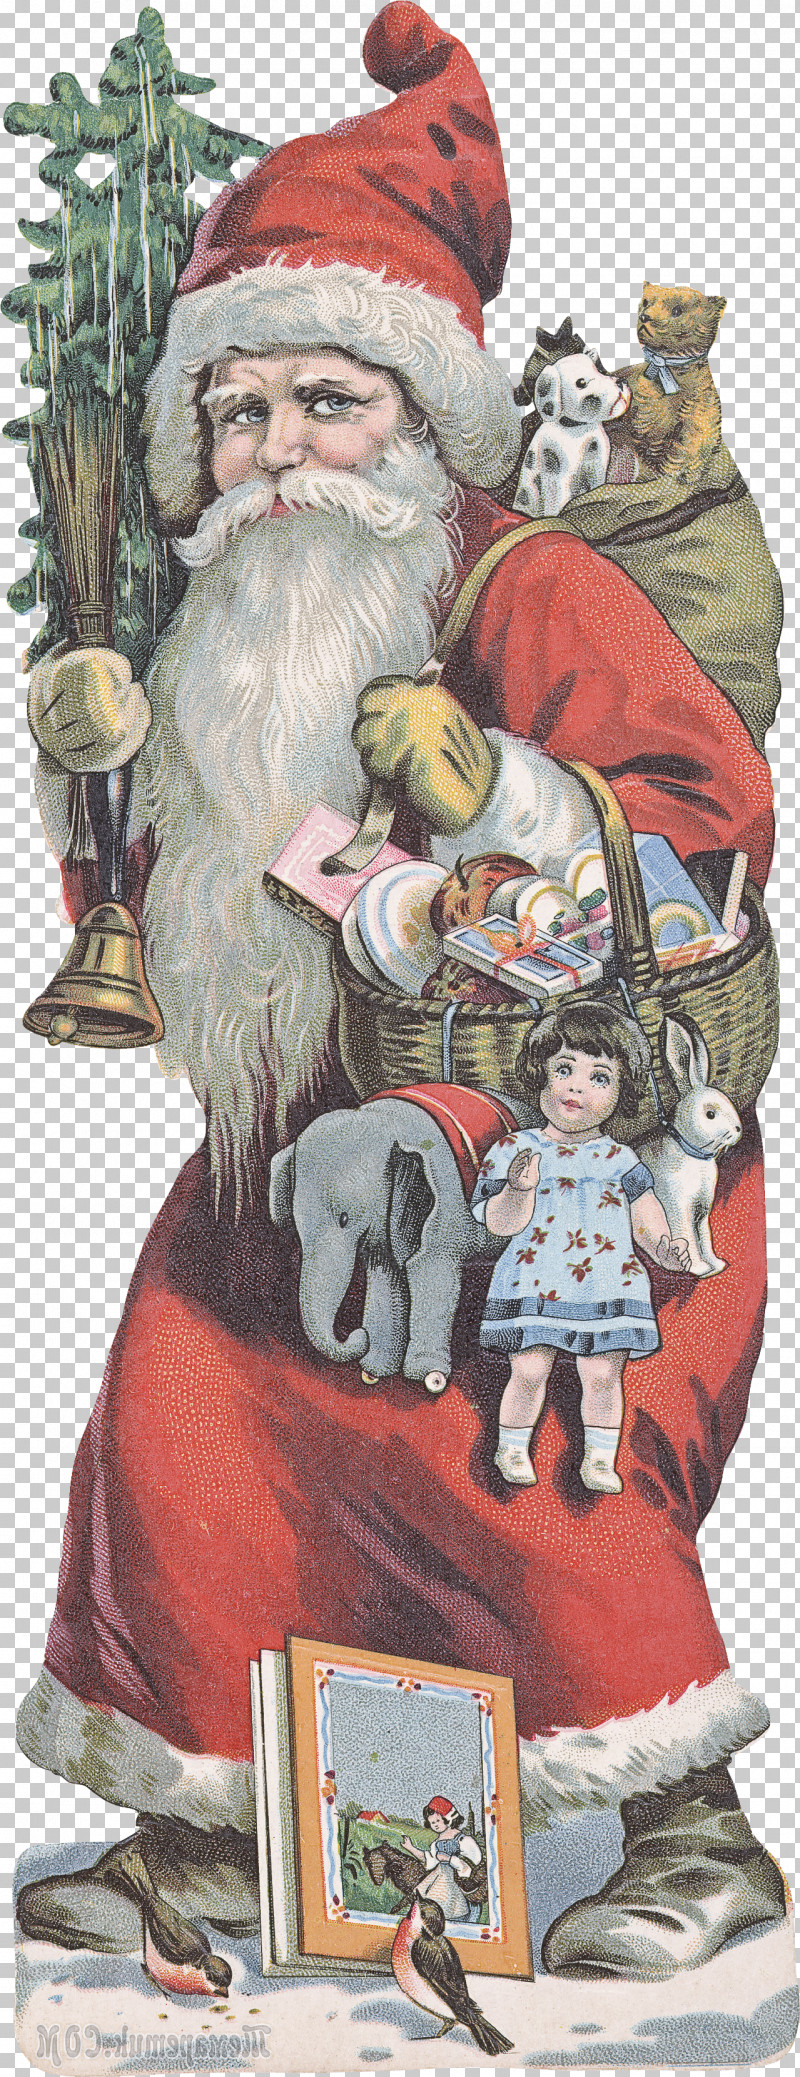 Santa Claus PNG, Clipart, Christmas, Christmas Eve, Holiday, Santa Claus Free PNG Download